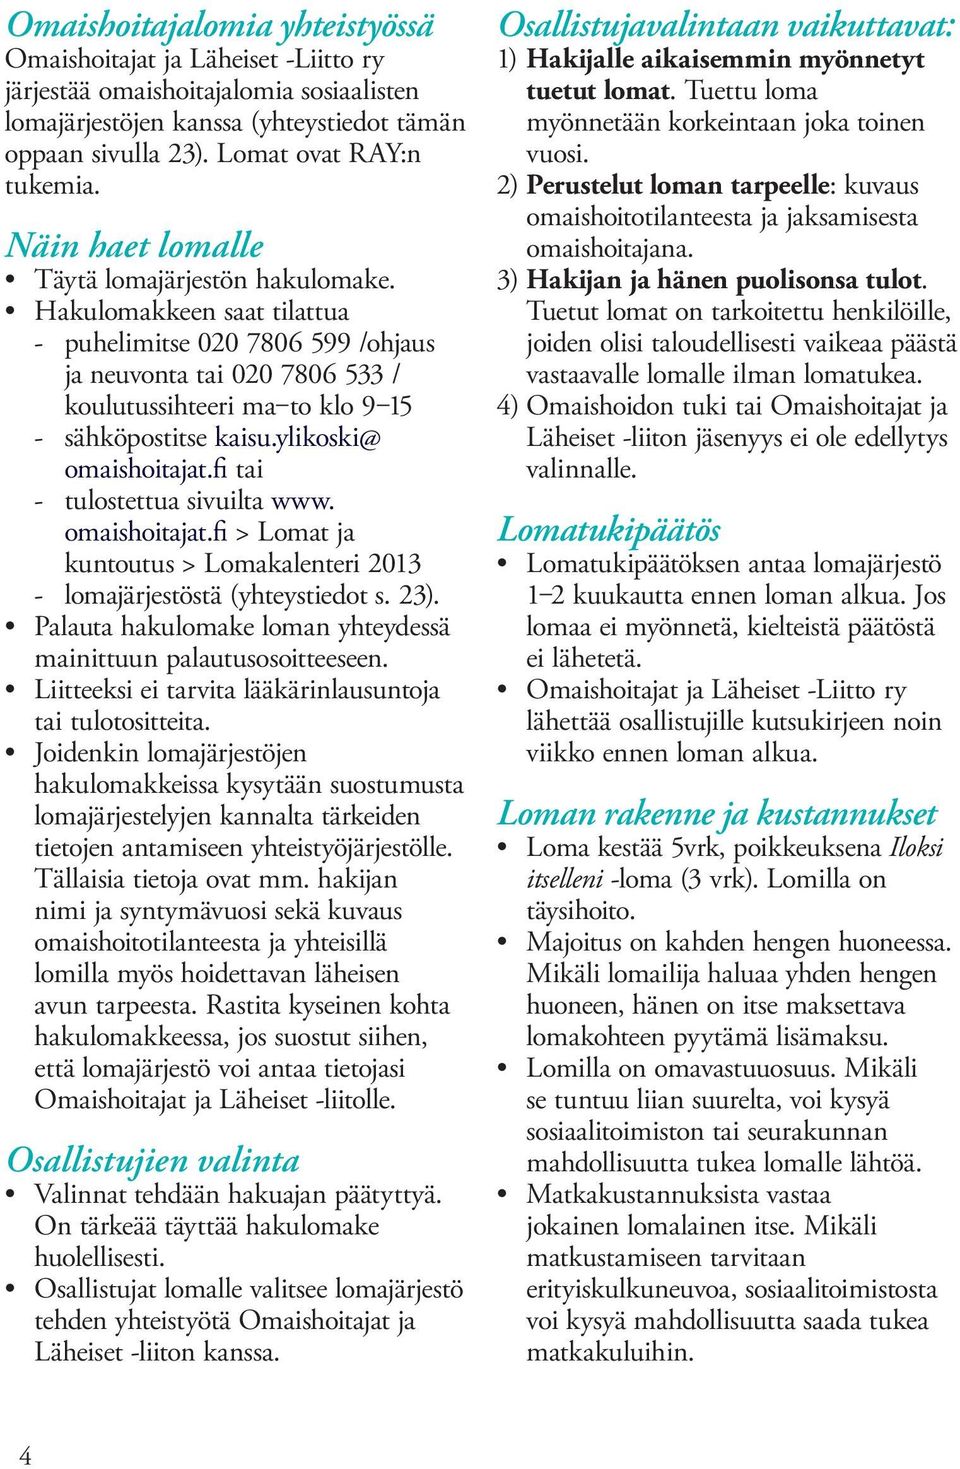 ylikoski@ omaishoitajat.fi tai - tulostettua sivuilta www. omaishoitajat.fi > Lomat ja kuntoutus > Lomakalenteri 2013 - lomajärjestöstä (yhteystiedot s. 23).